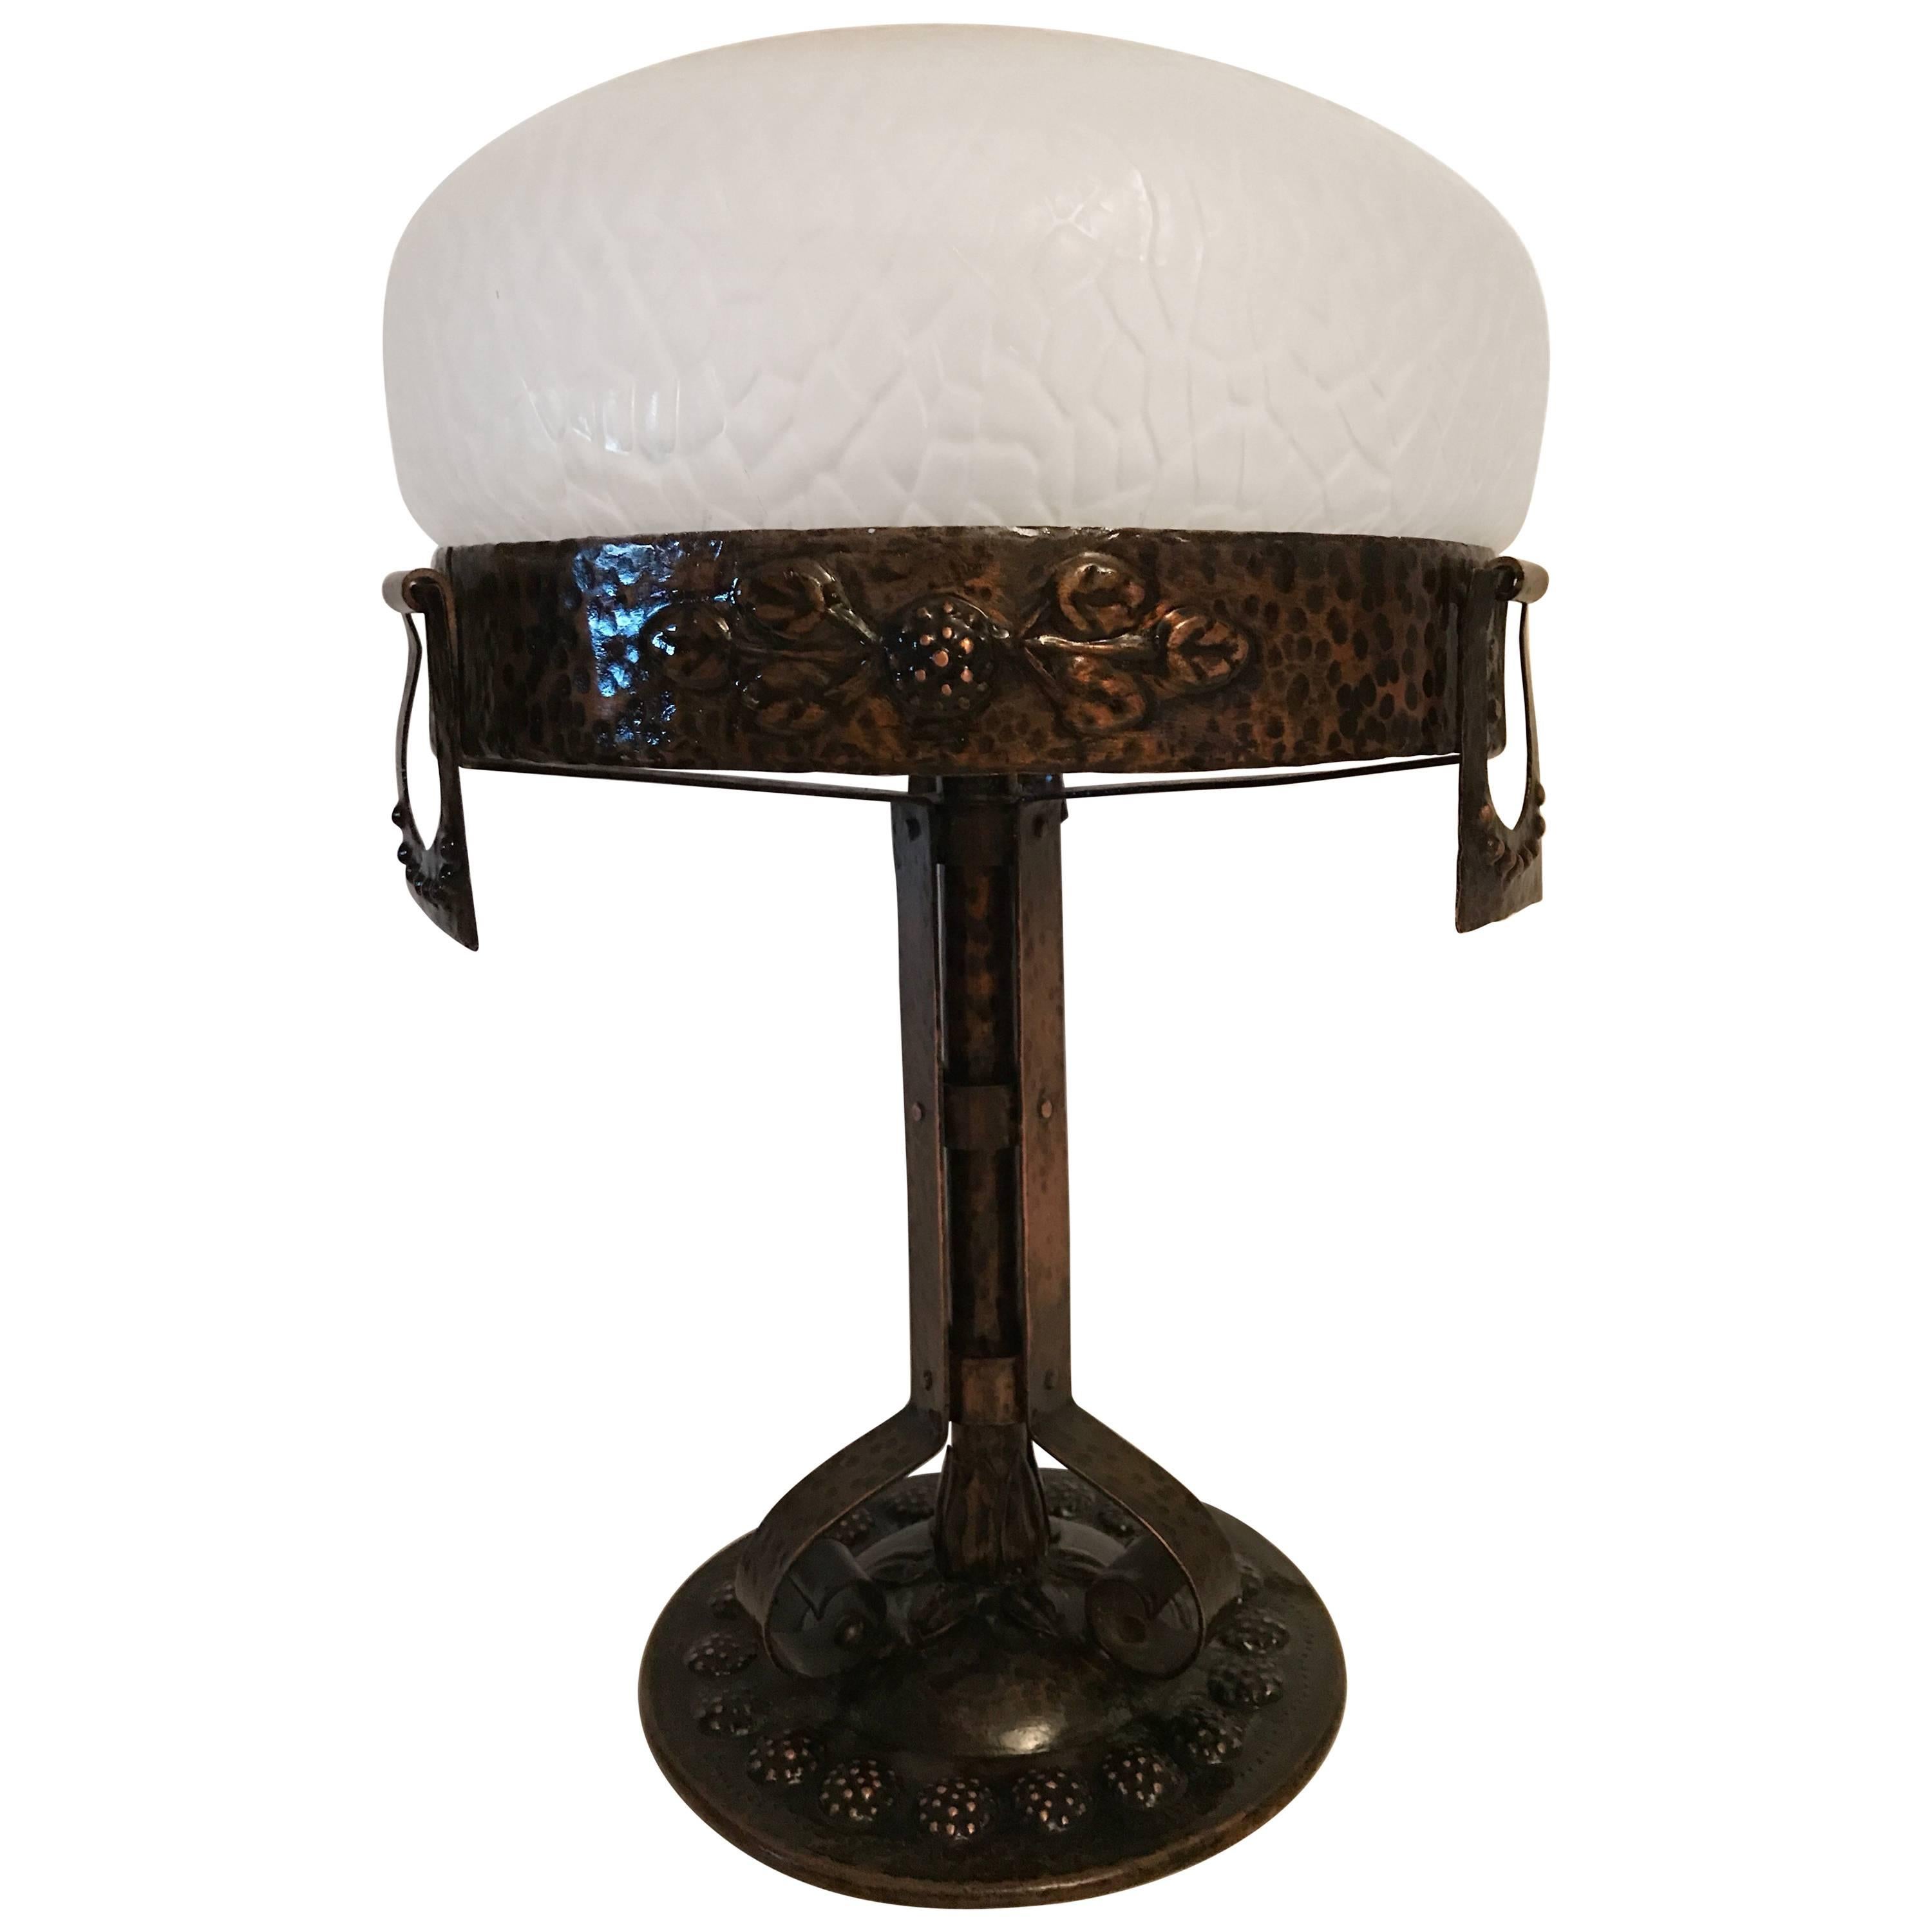 1915 Swedish Art Nouveau Jugendstil Copper and Glass Table Lamp For Sale